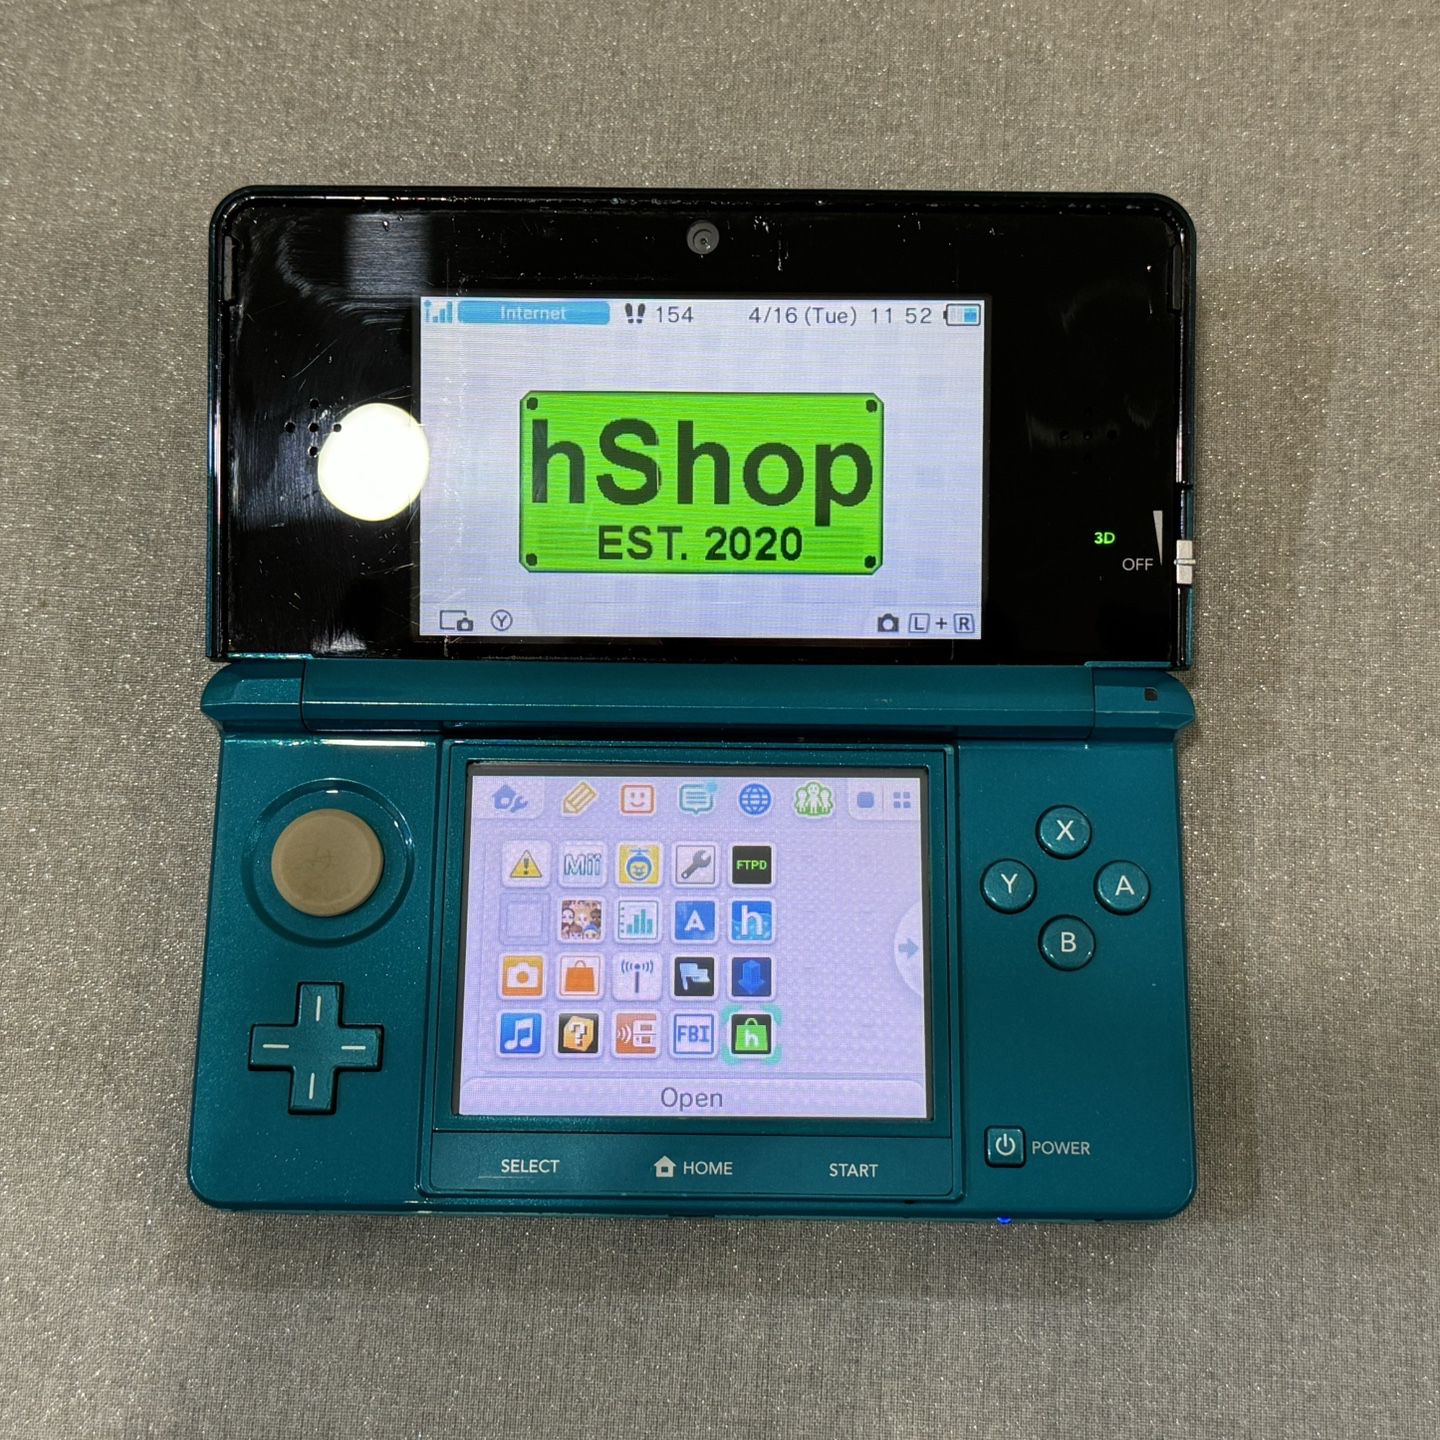 Nintendo 3DS (Modded, Luma3DS v13.0.2, hShop preinstalled)